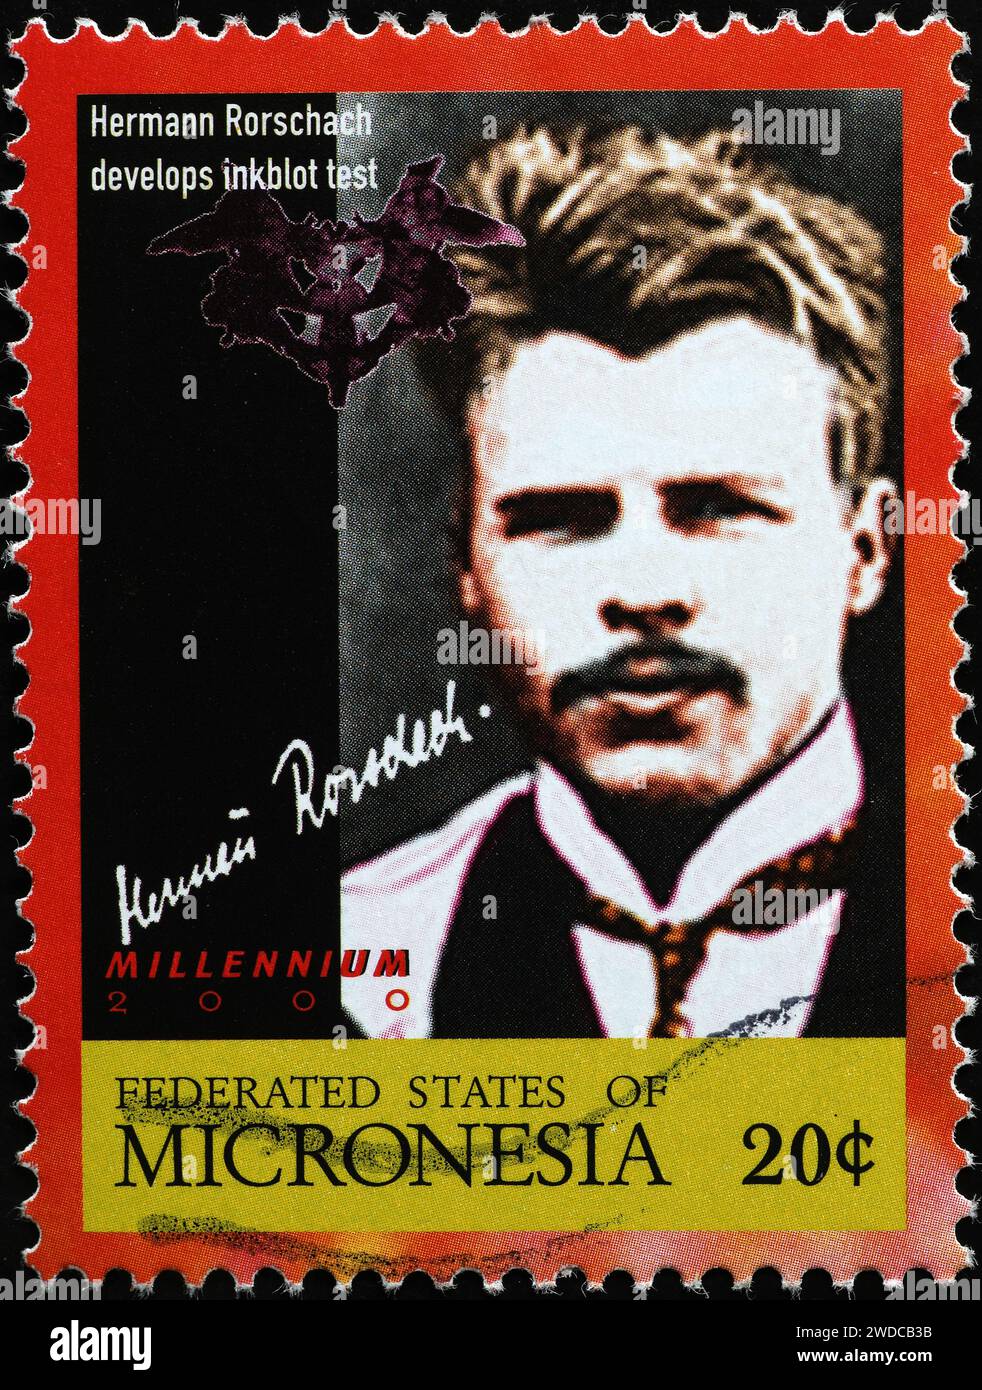 Hermann Rorschach, inventore del test dei blot di inchiostro su francobolli Foto Stock